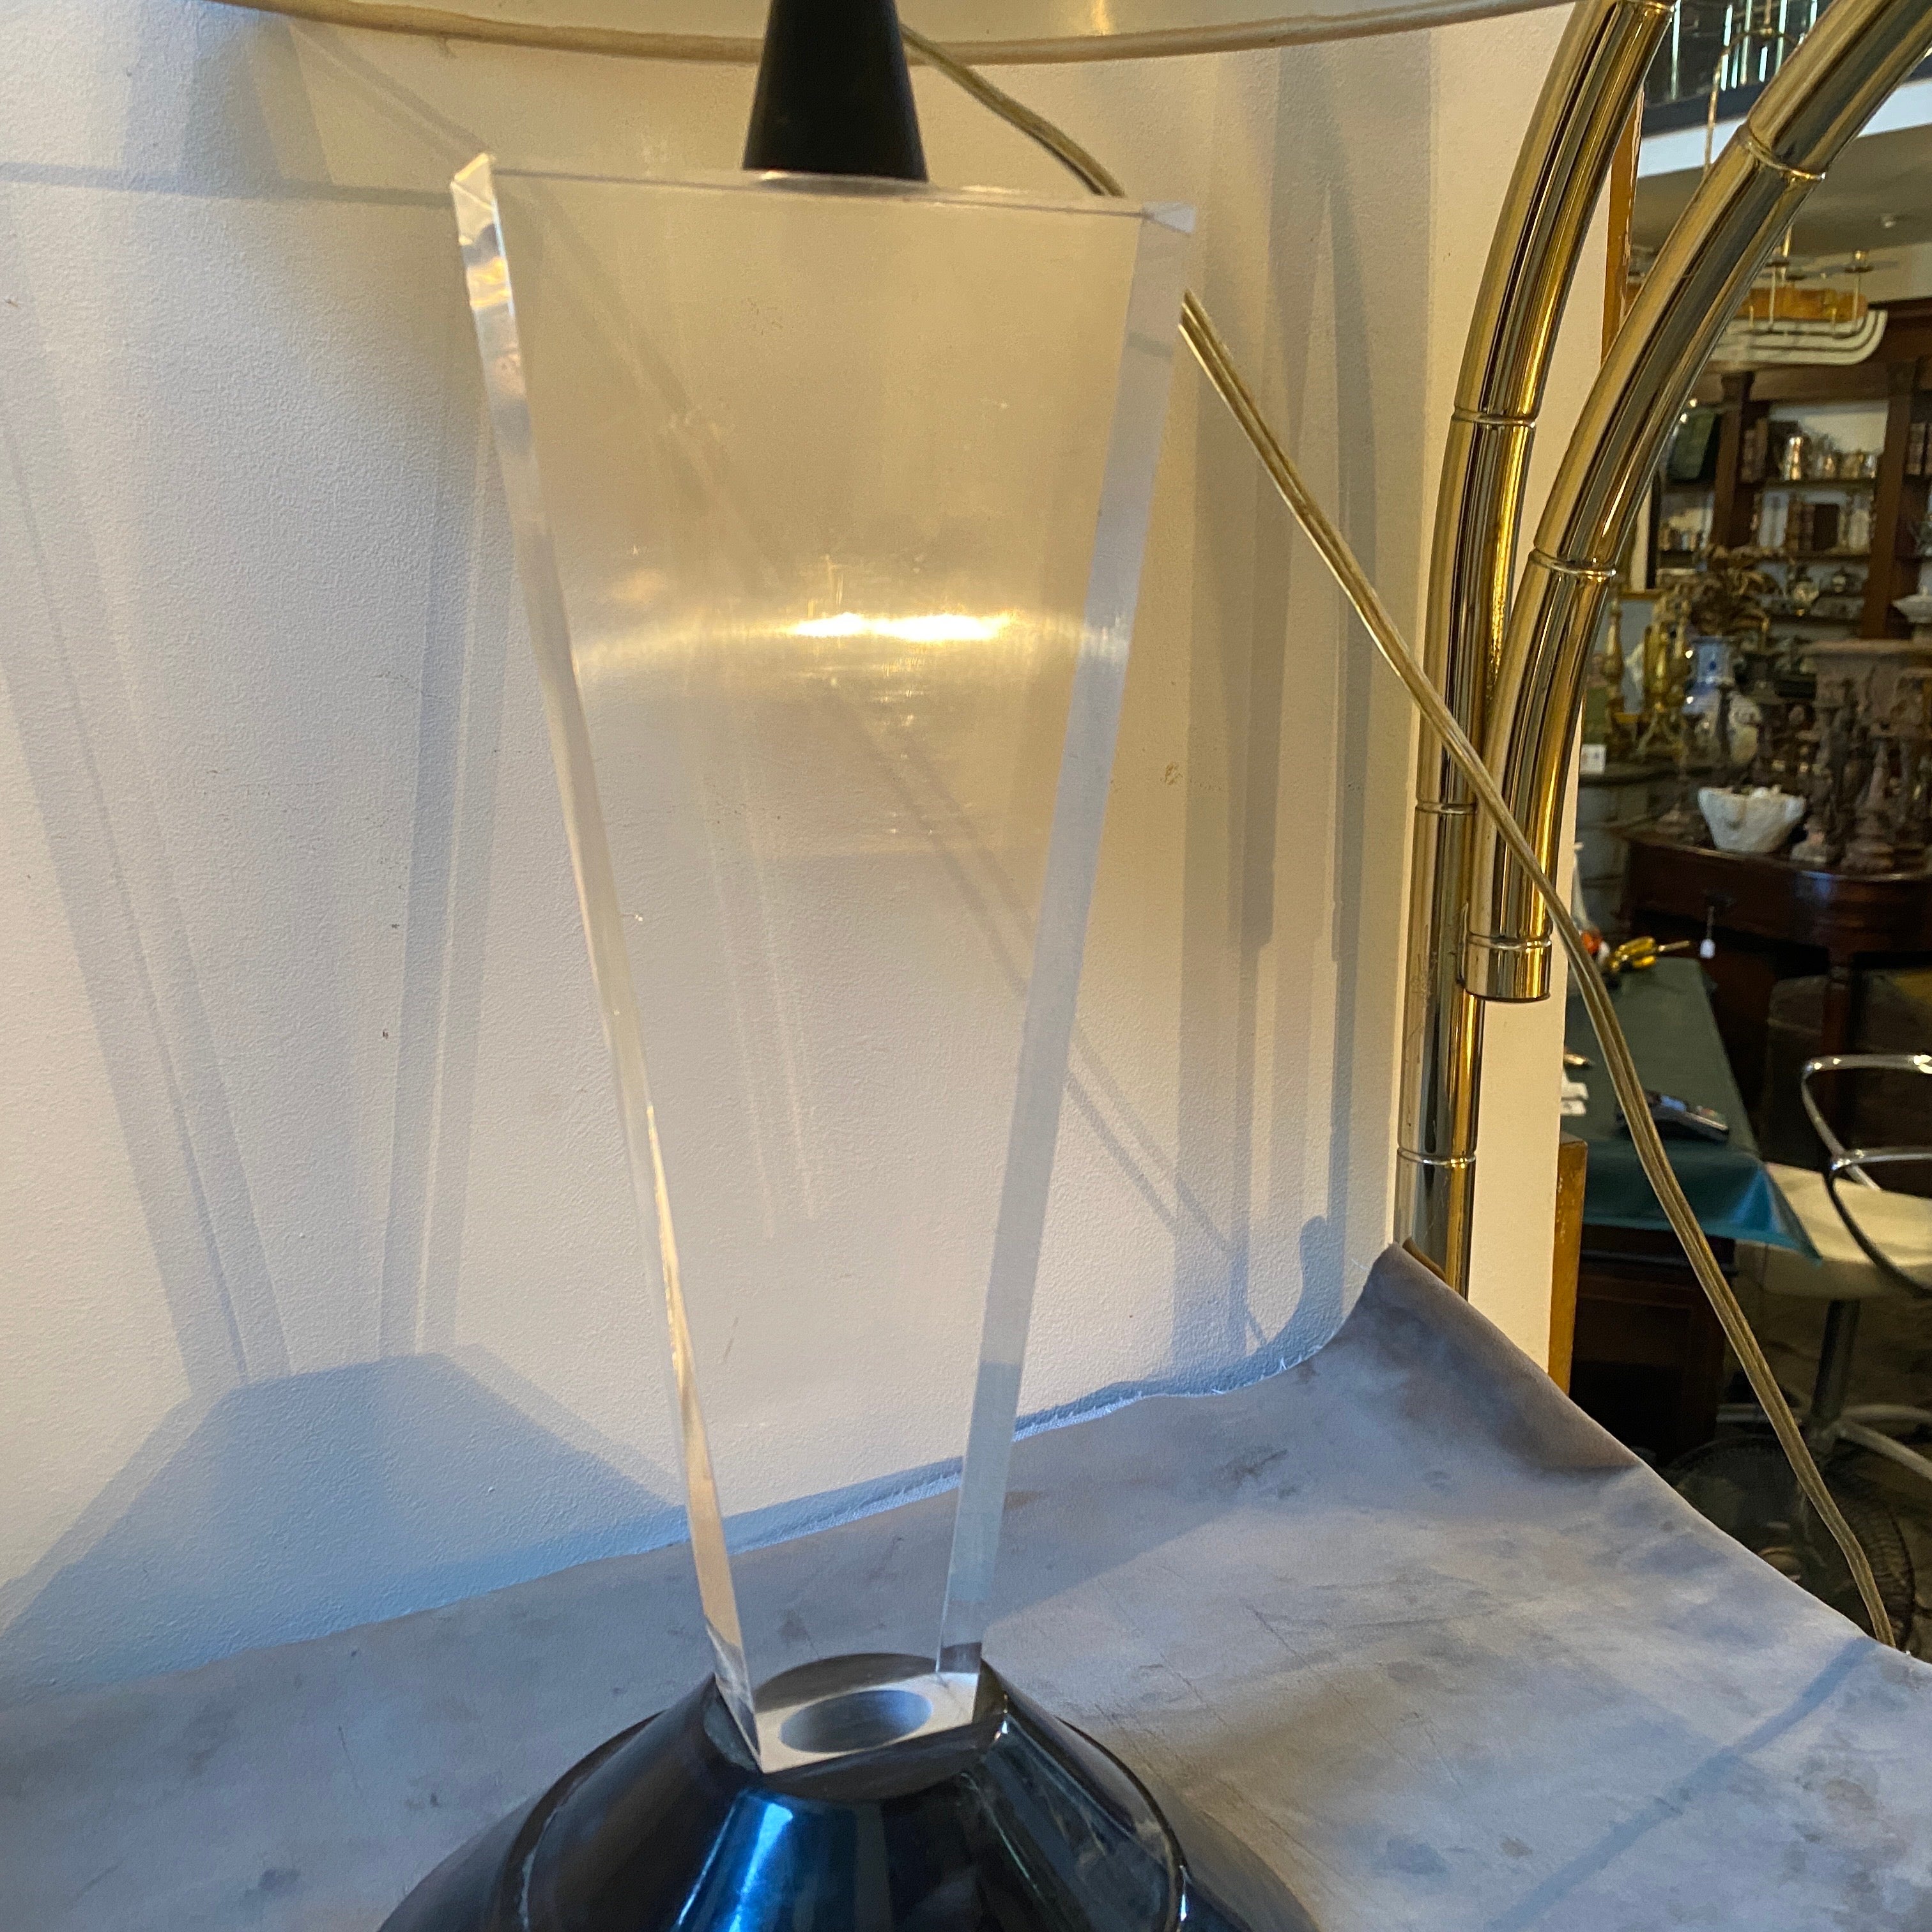 Lampe de table en Lucite noire et transparente conçue et fabriquée en Italie dans les années 80 dans le style de Memphis Milano. La base de la lampe mesure 44 cm de haut. Il fonctionne à la fois en 110 et 240 volts et nécessite une ampoule ordinaire